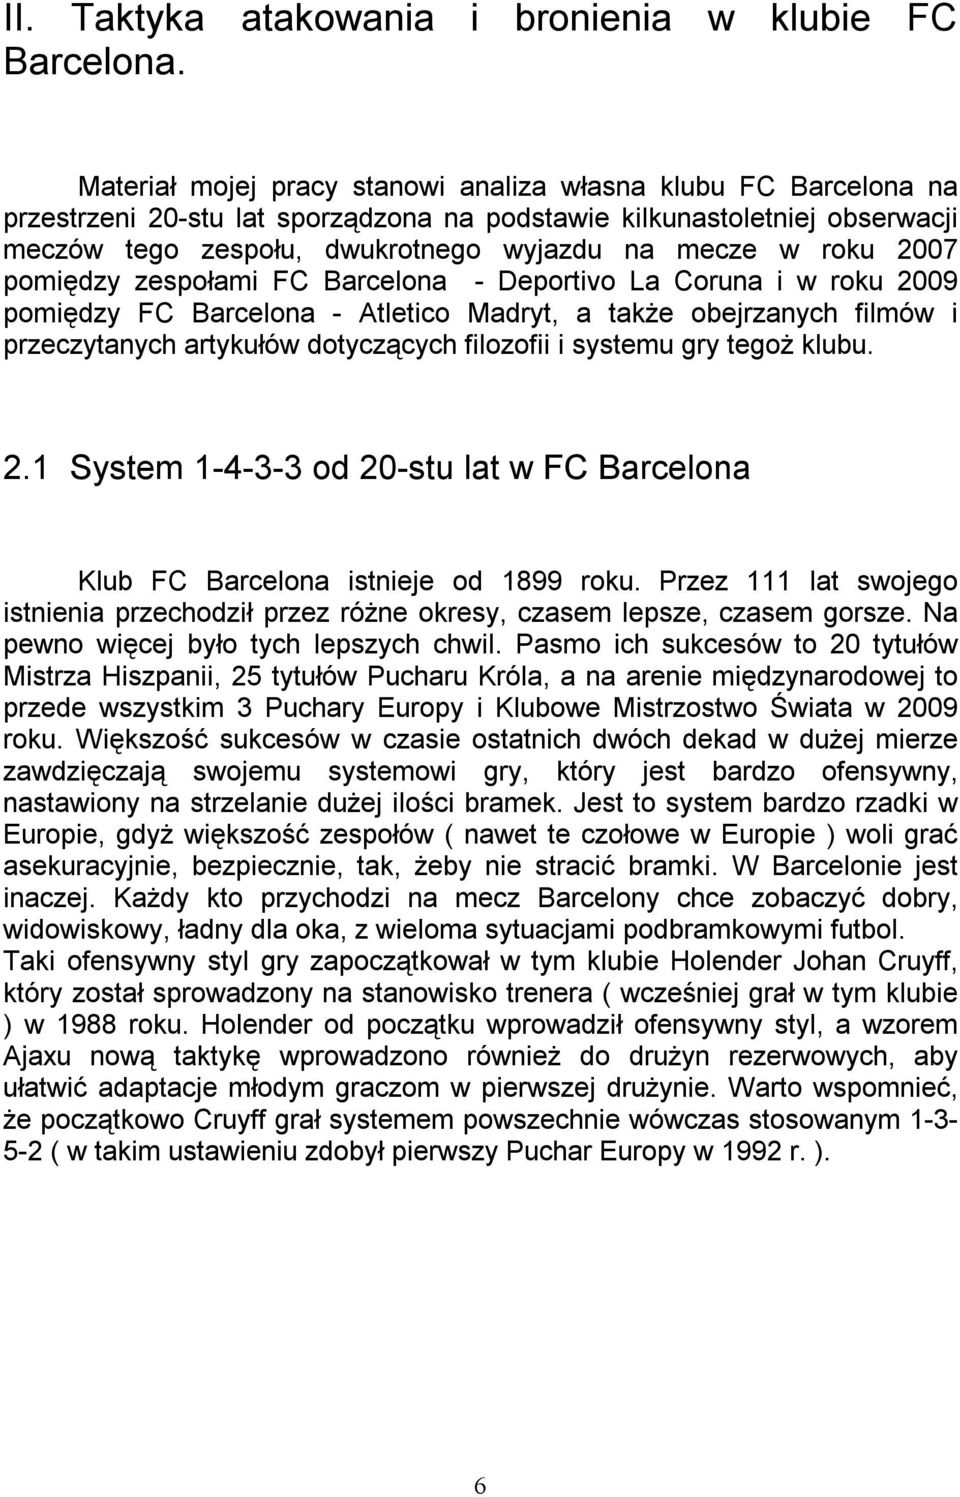 2007 pomiędzy zespołami FC Barcelona - Deportivo La Coruna i w roku 2009 pomiędzy FC Barcelona - Atletico Madryt, a także obejrzanych filmów i przeczytanych artykułów dotyczących filozofii i systemu